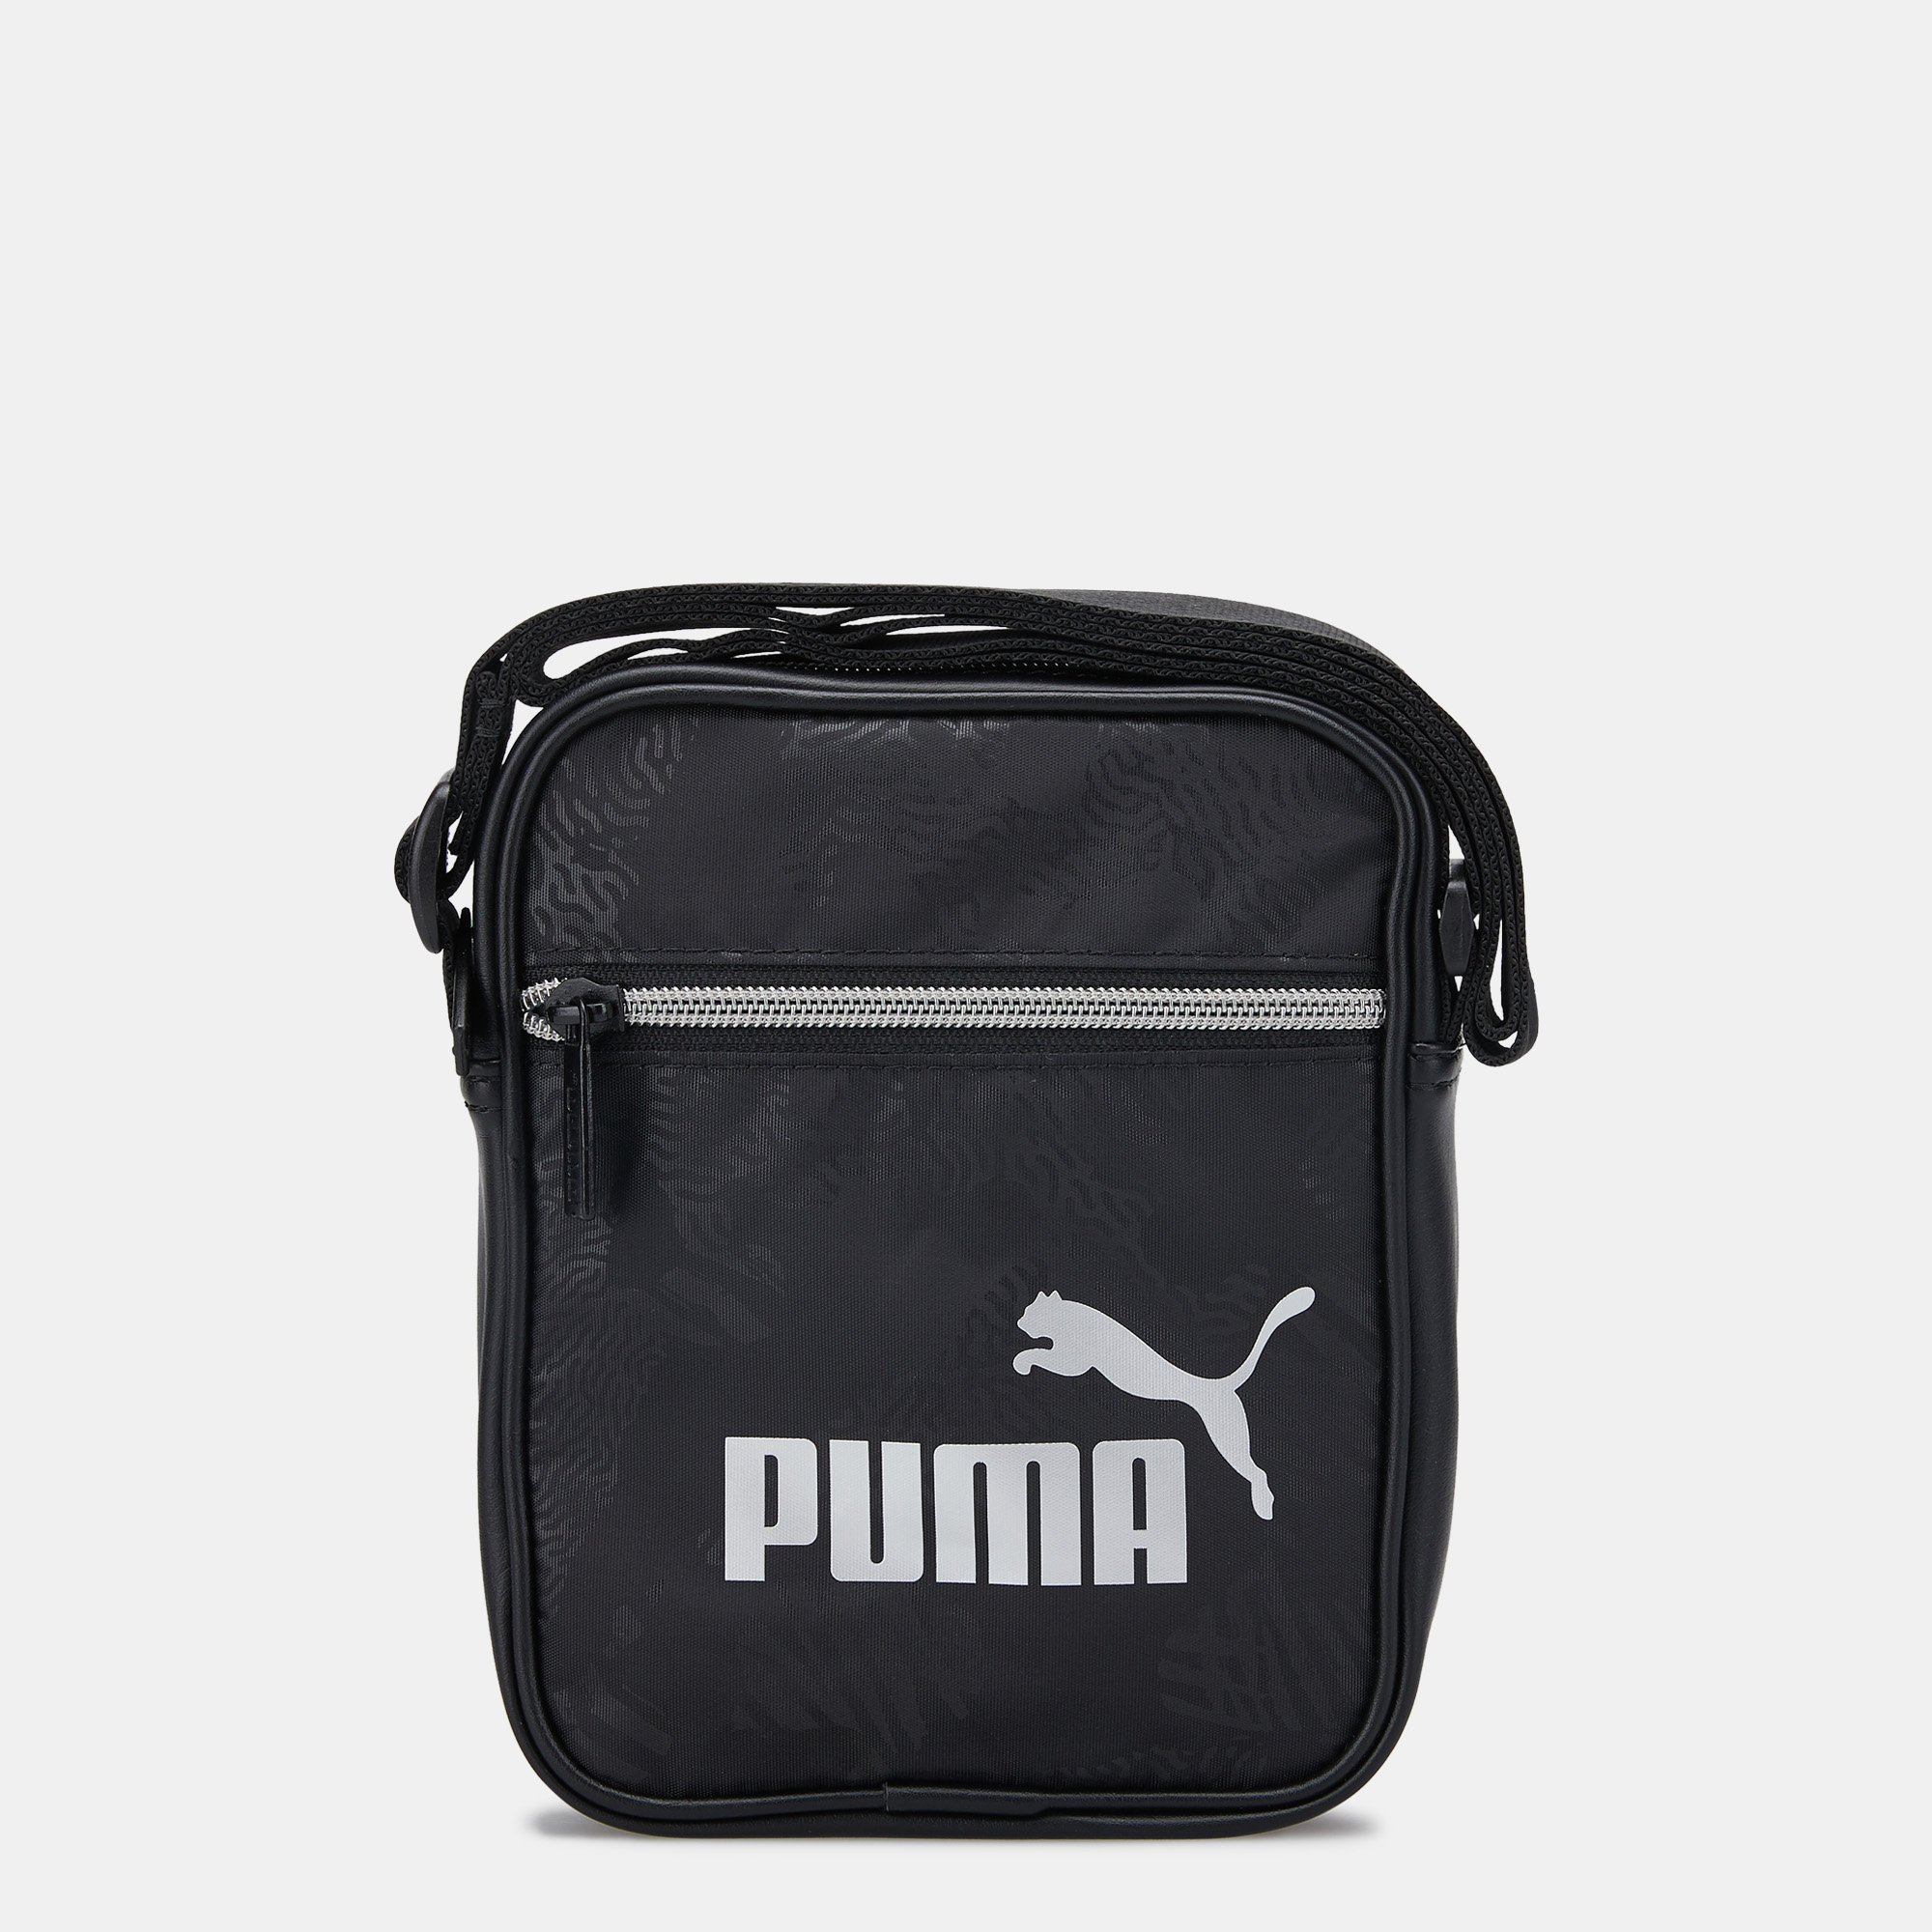 puma cross body bag